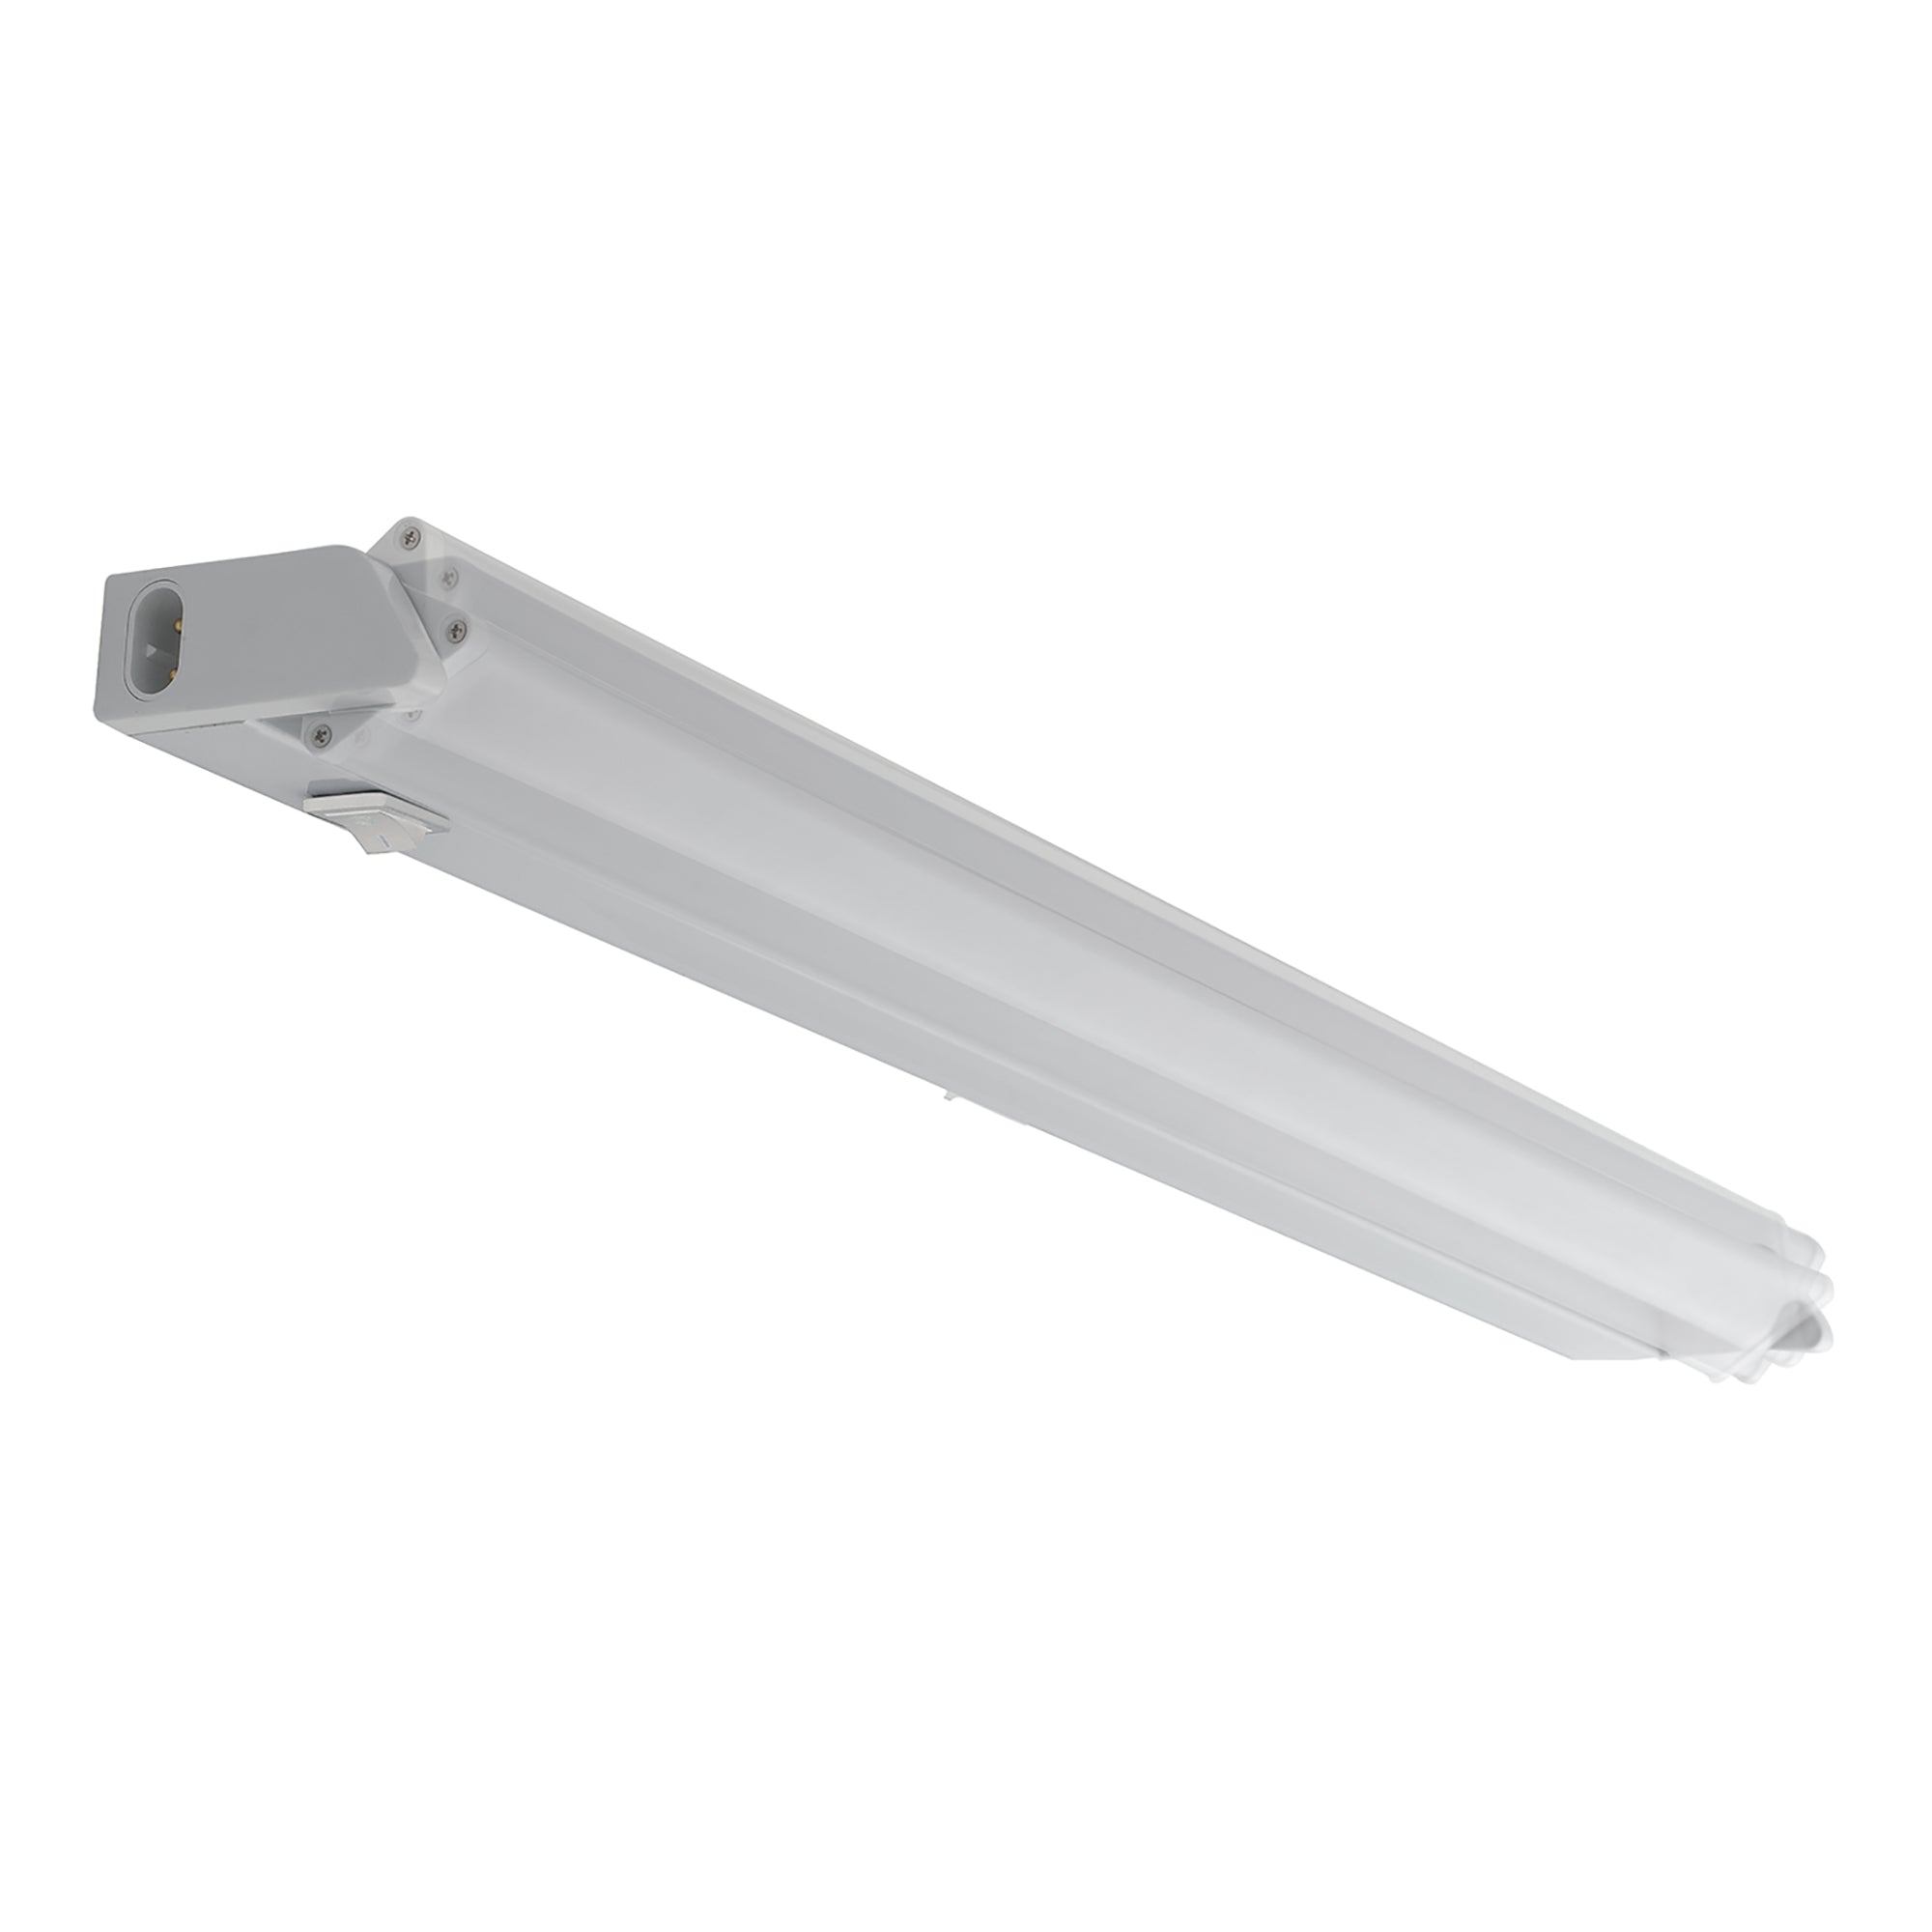 Barra LED sottopensile MOVIE in policarbonato bianco con diffusore orientabile e interruttore